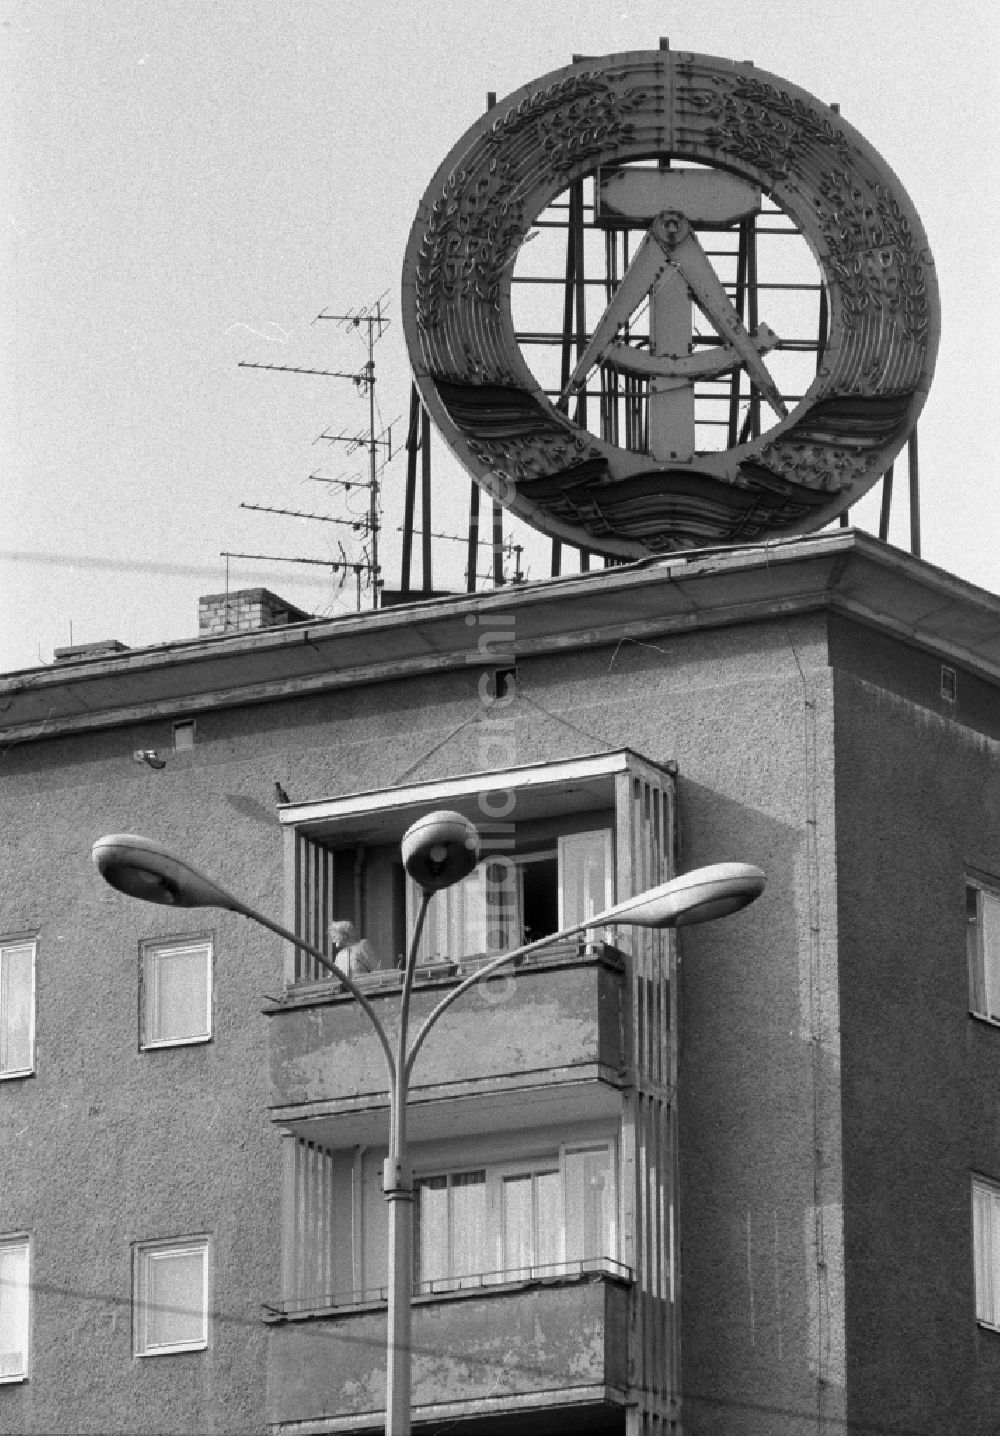 DDR-Bildarchiv: Berlin - Symbol auf dem Dach eines Wohnhauses in Berlin auf dem Gebiet der ehemaligen DDR, Deutsche Demokratische Republik